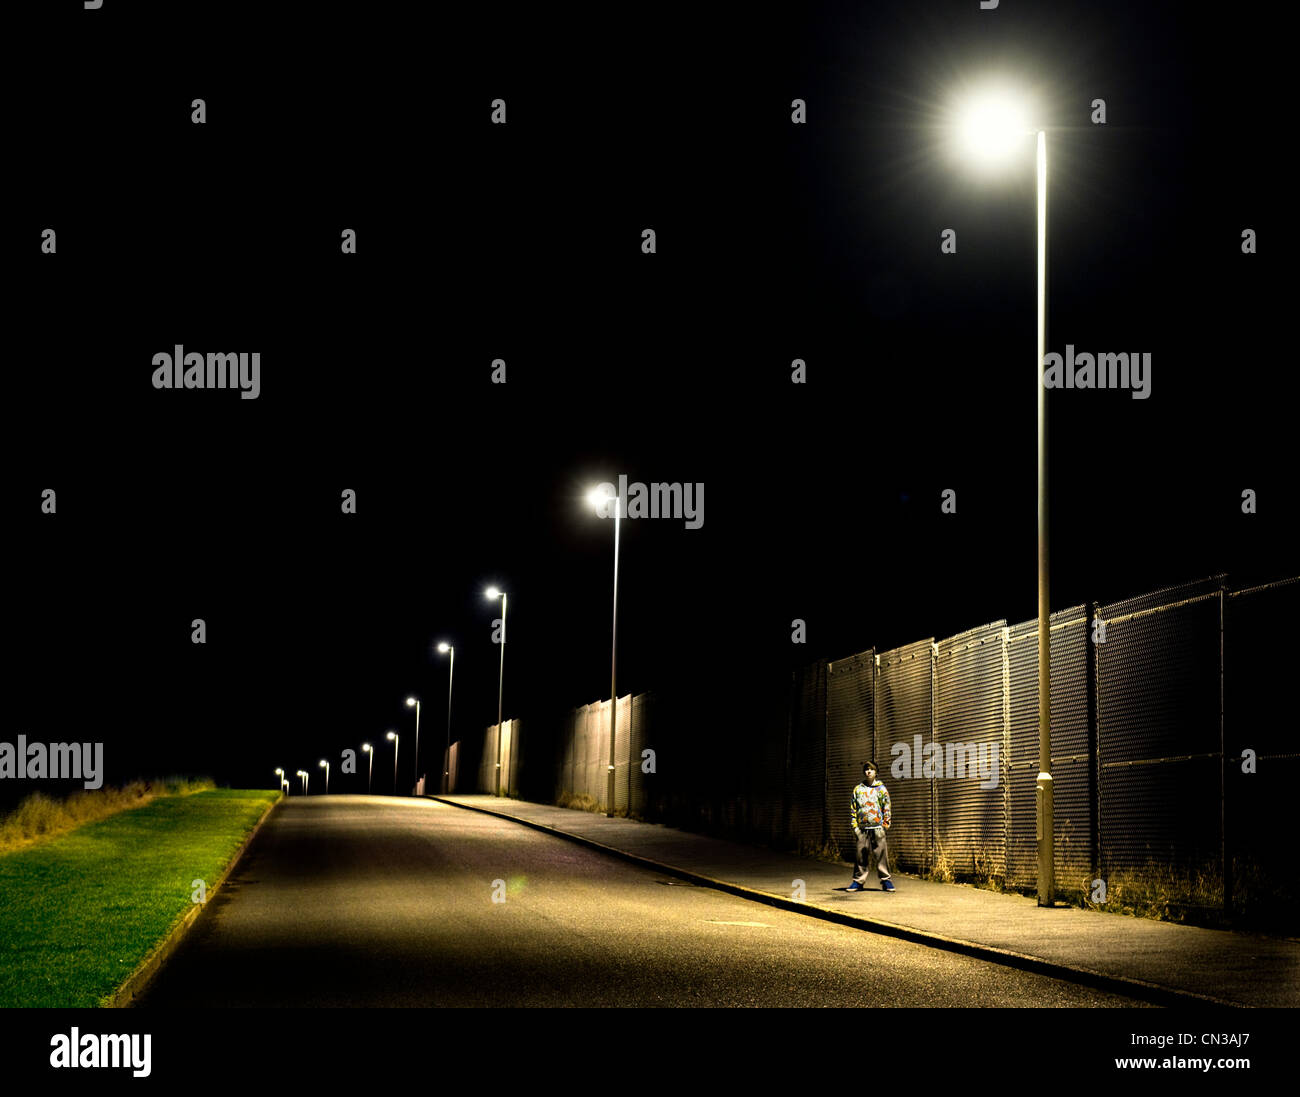 Junge stand auf Bürgersteig in der Nacht mit Straßenlaternen Stockfoto